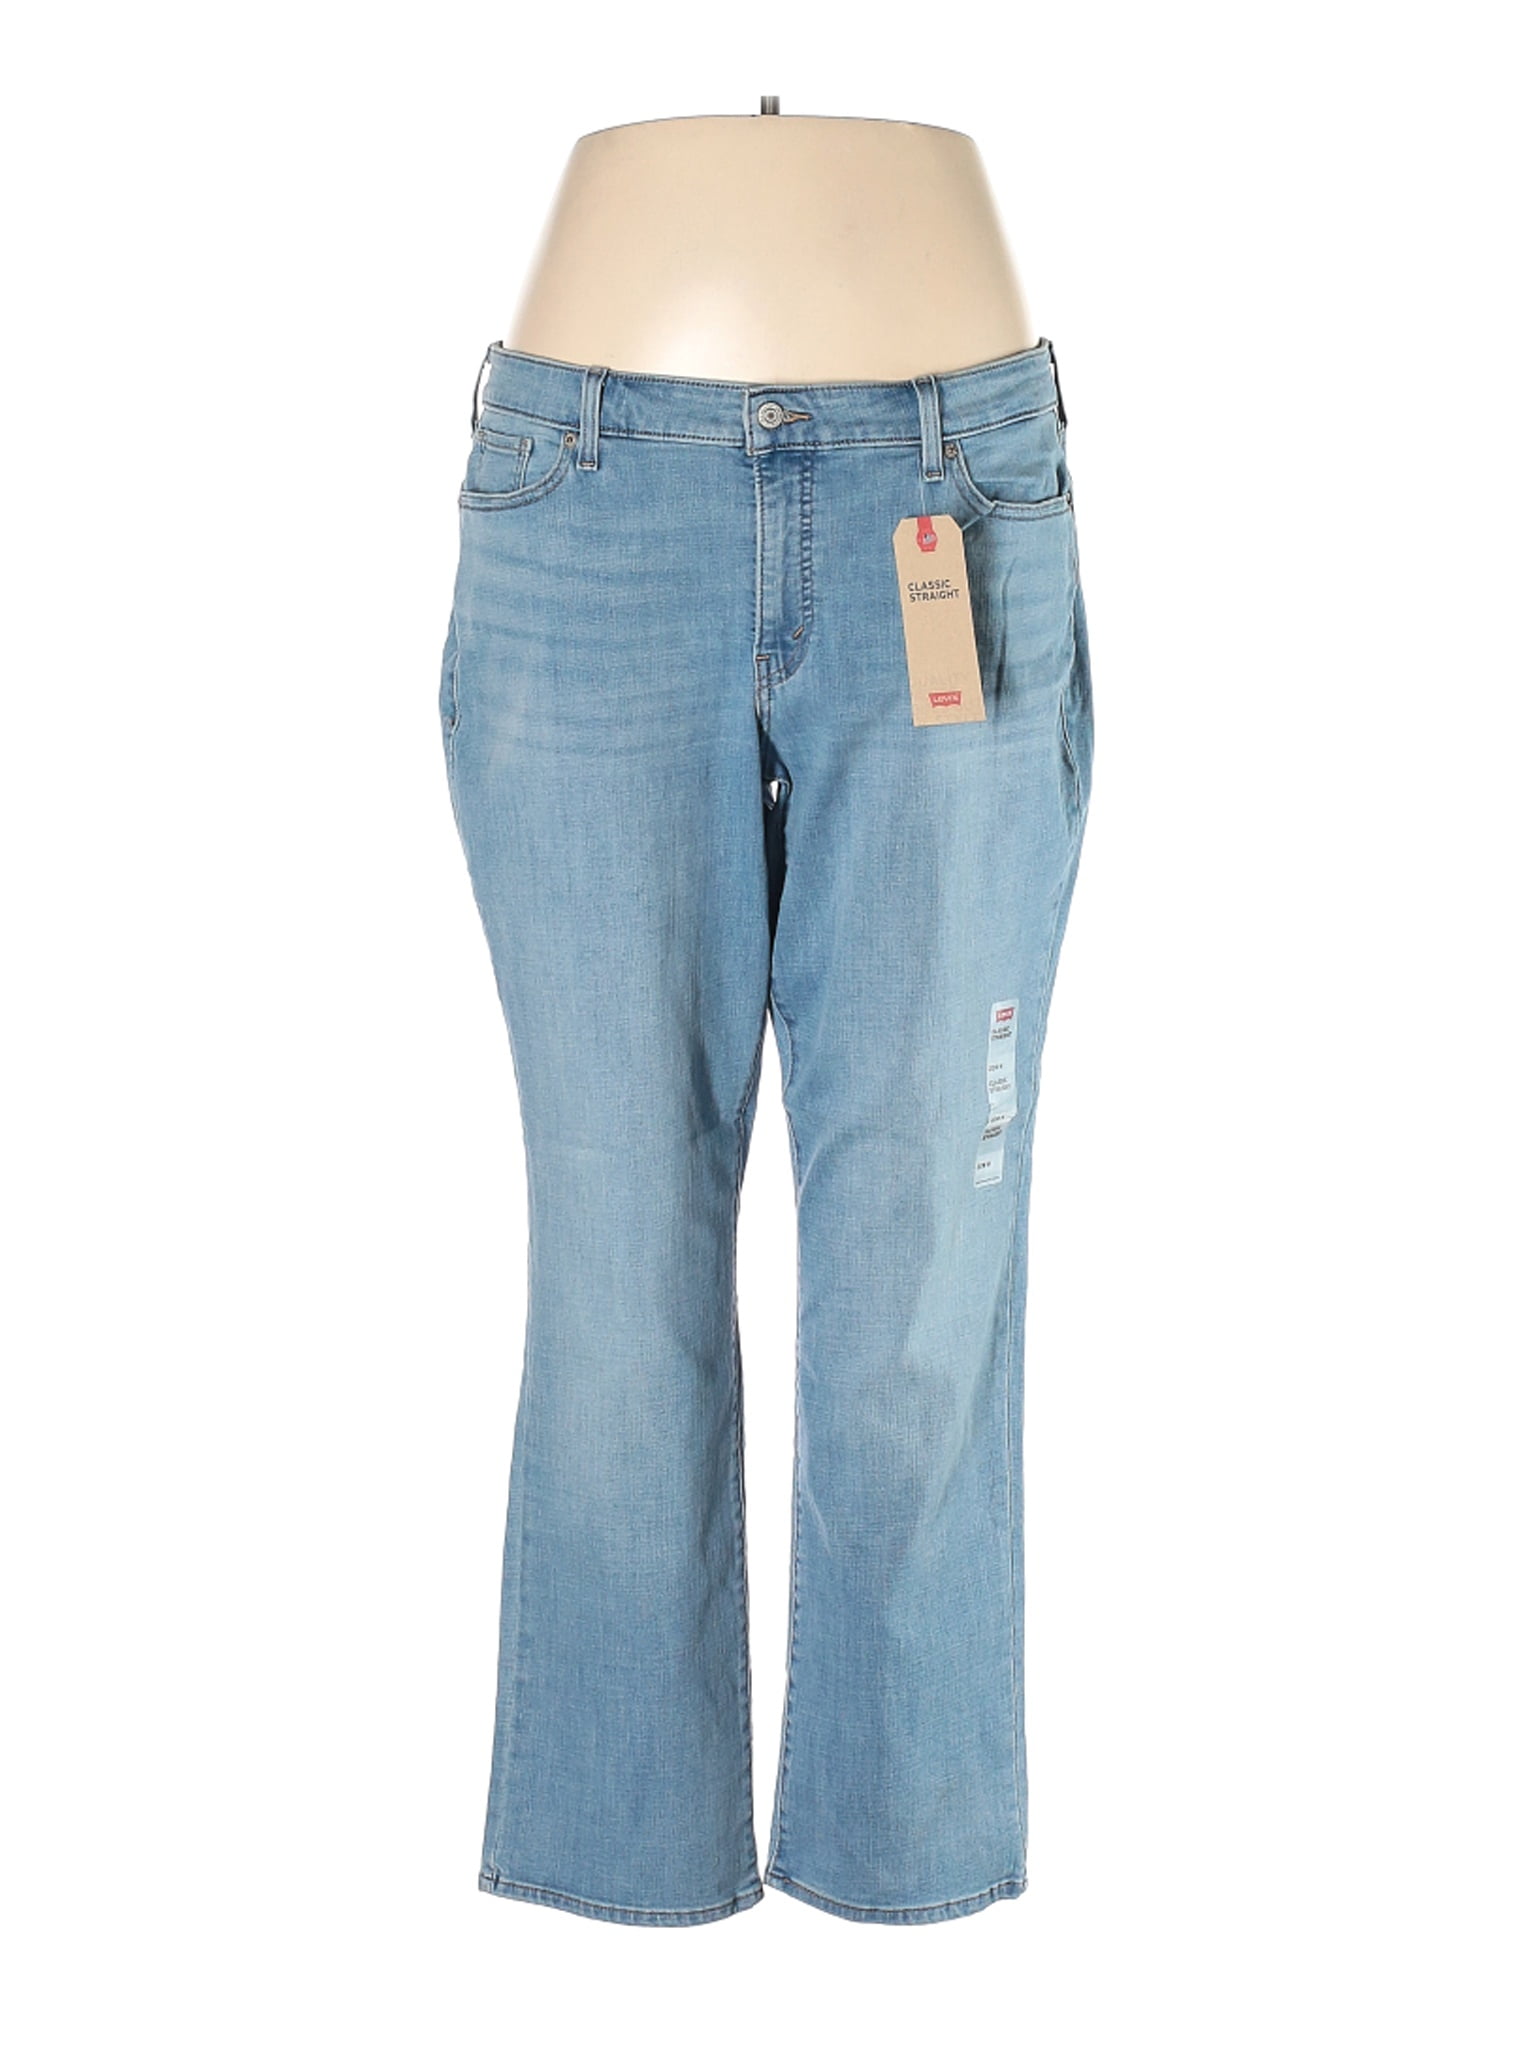 women's size 20 jeans